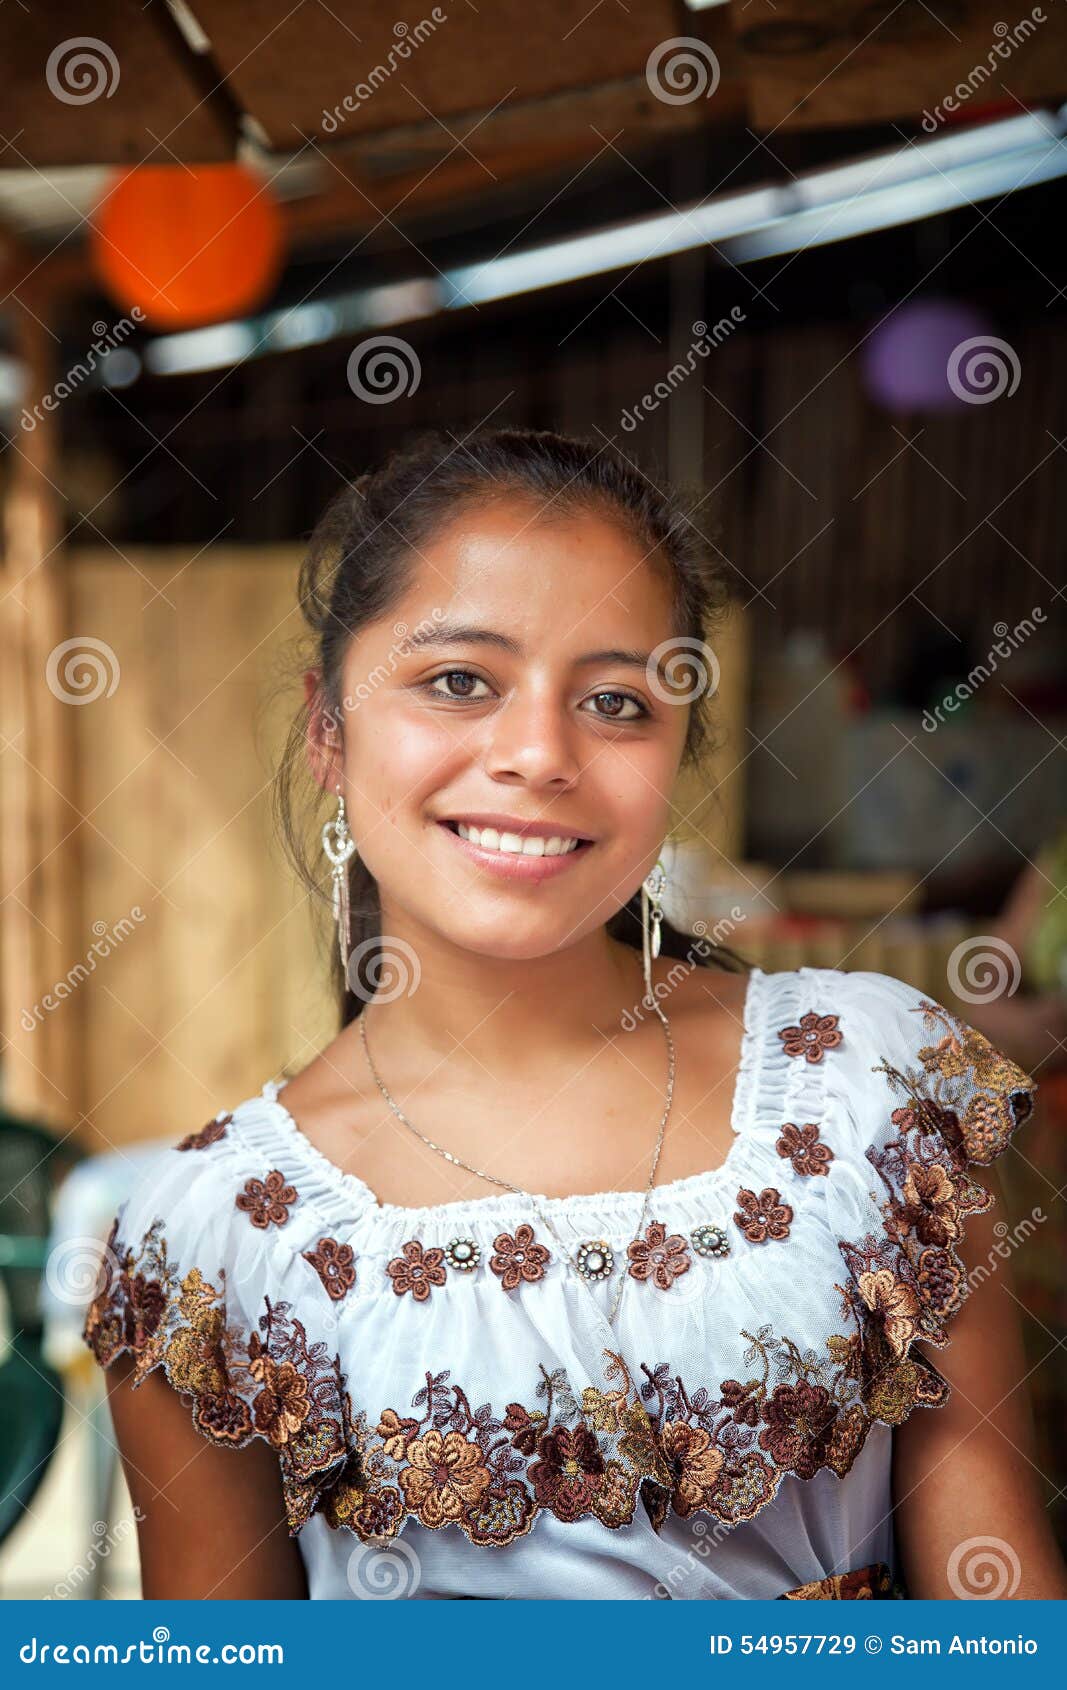 Guatemala Most Beautiful Women